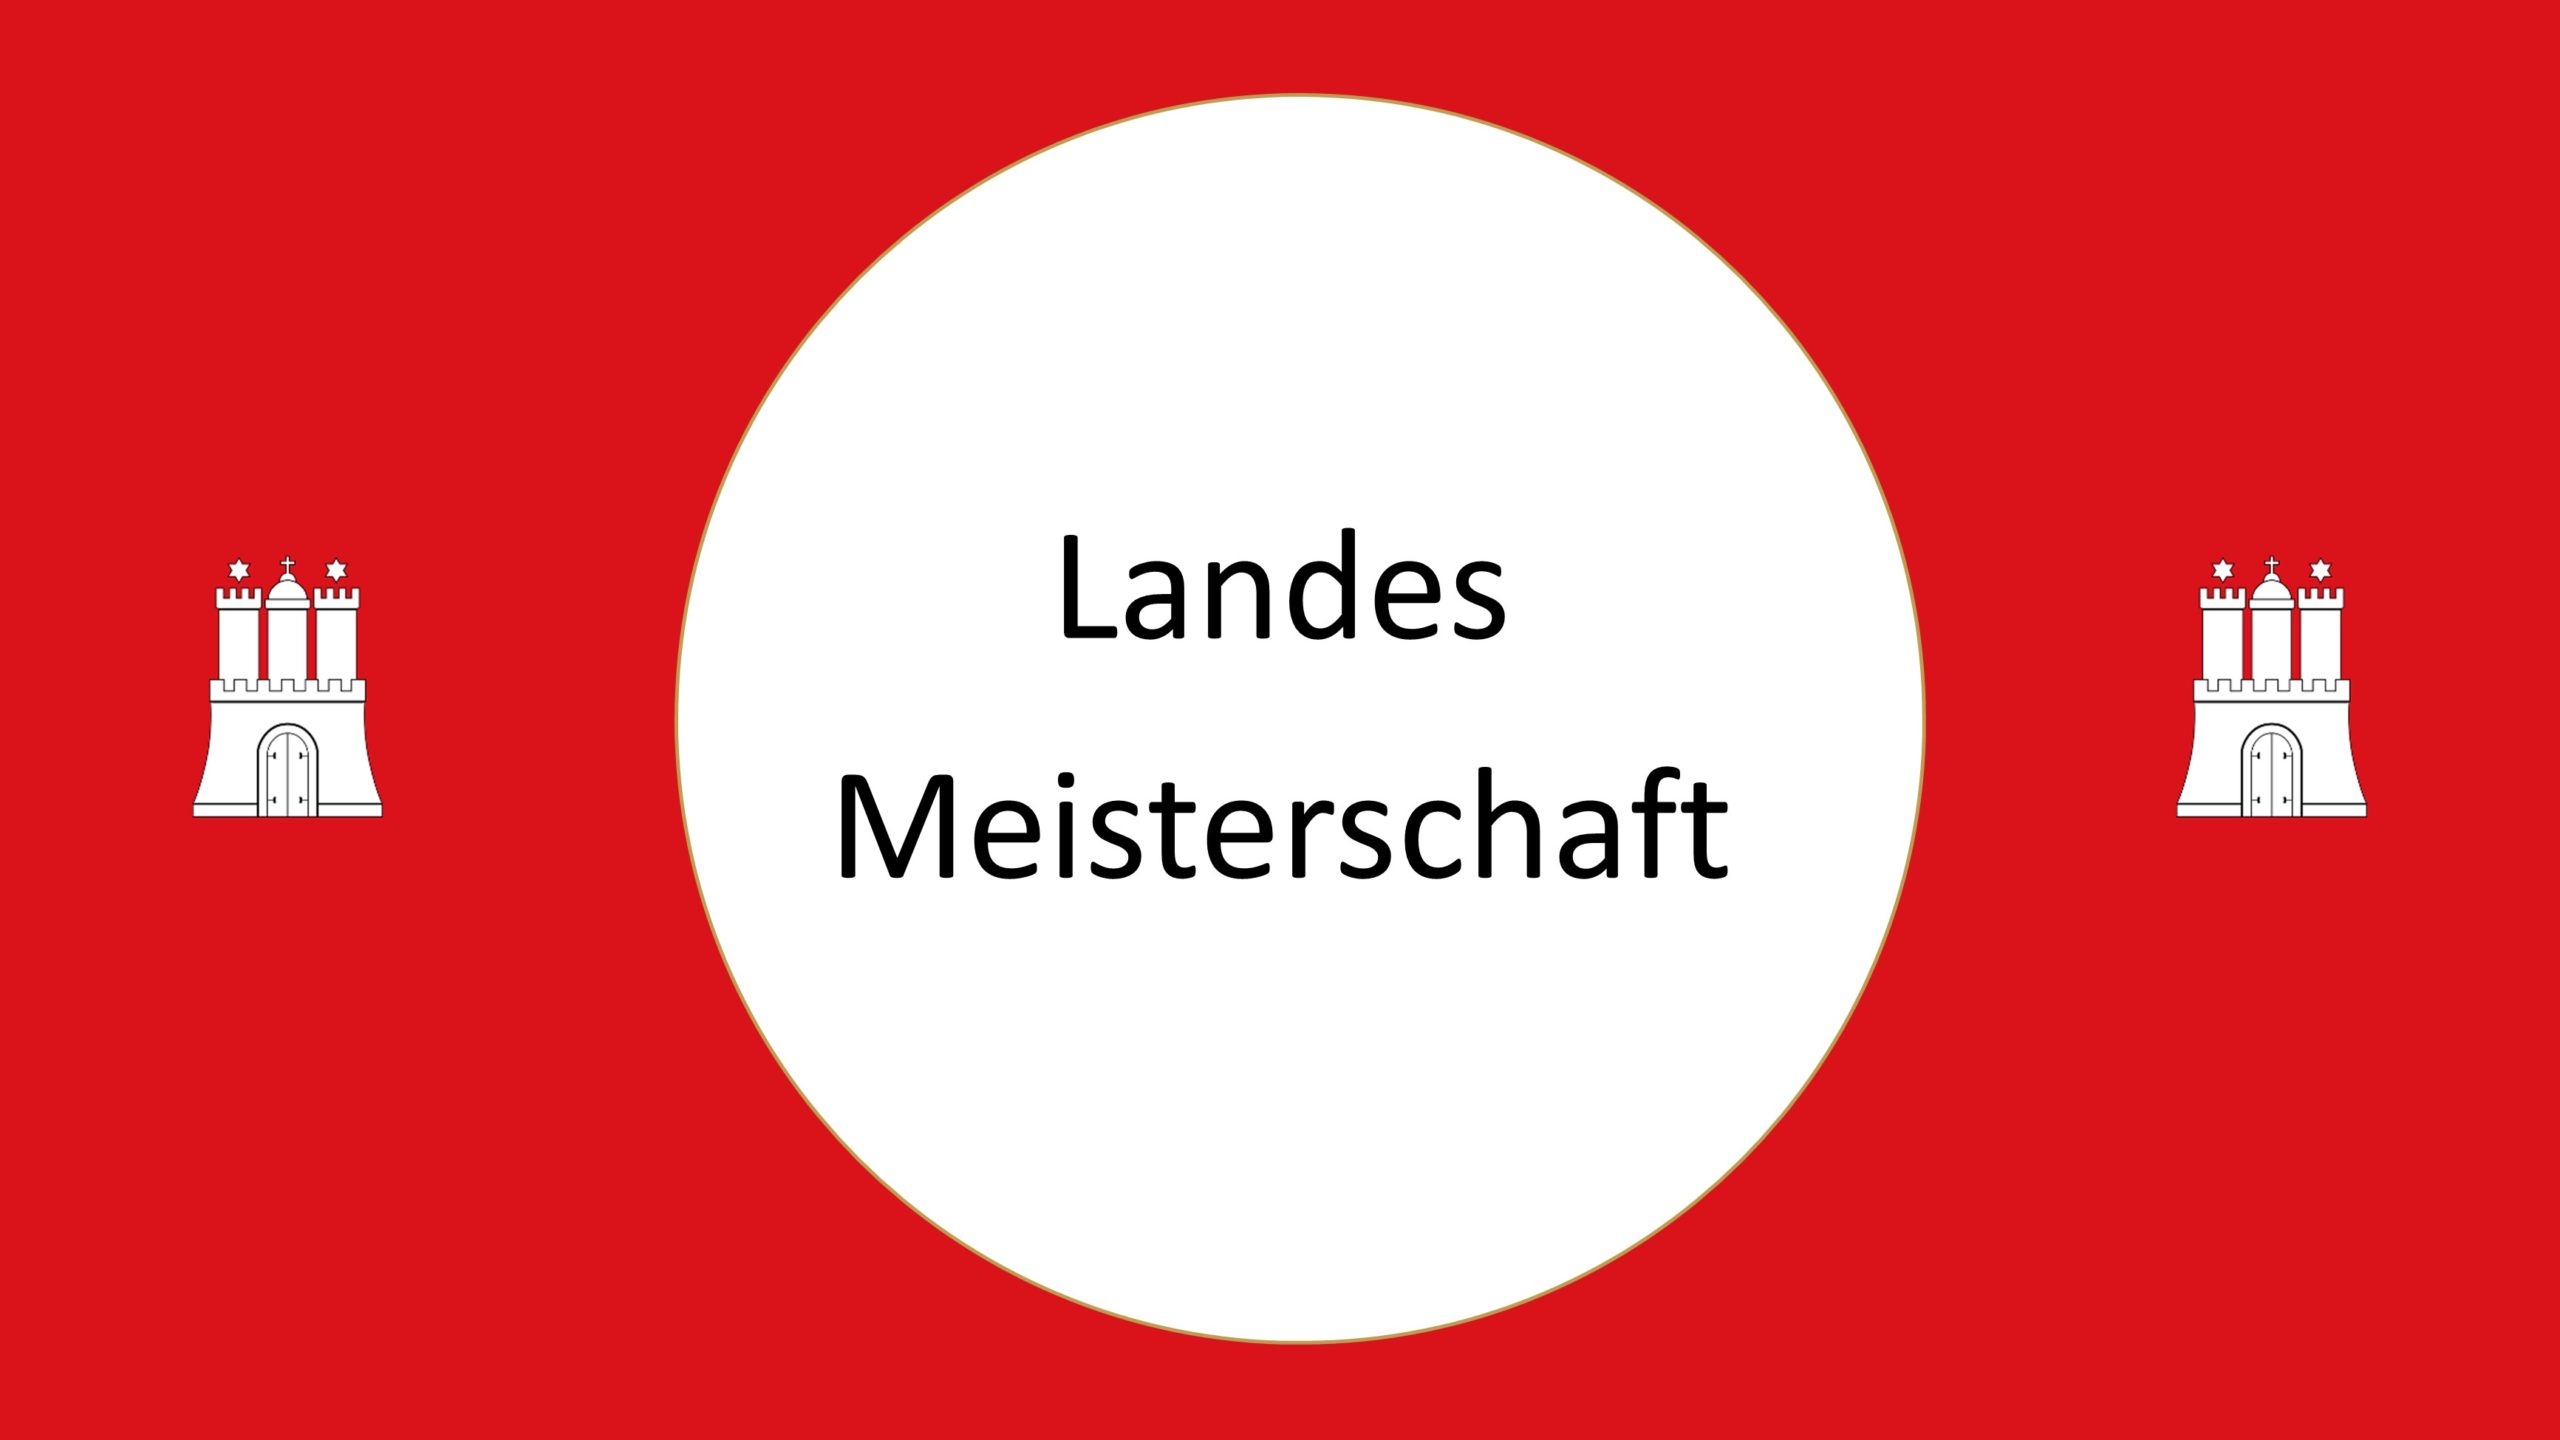 Ein Bild mit rotem Hintergrund, welches rechts und links das Wappen der Stadt Hamburg zeigt. In der Mitte ein weißer Kreis in dem mit schwarzer Schrift "Landes Meisterschaft" steht